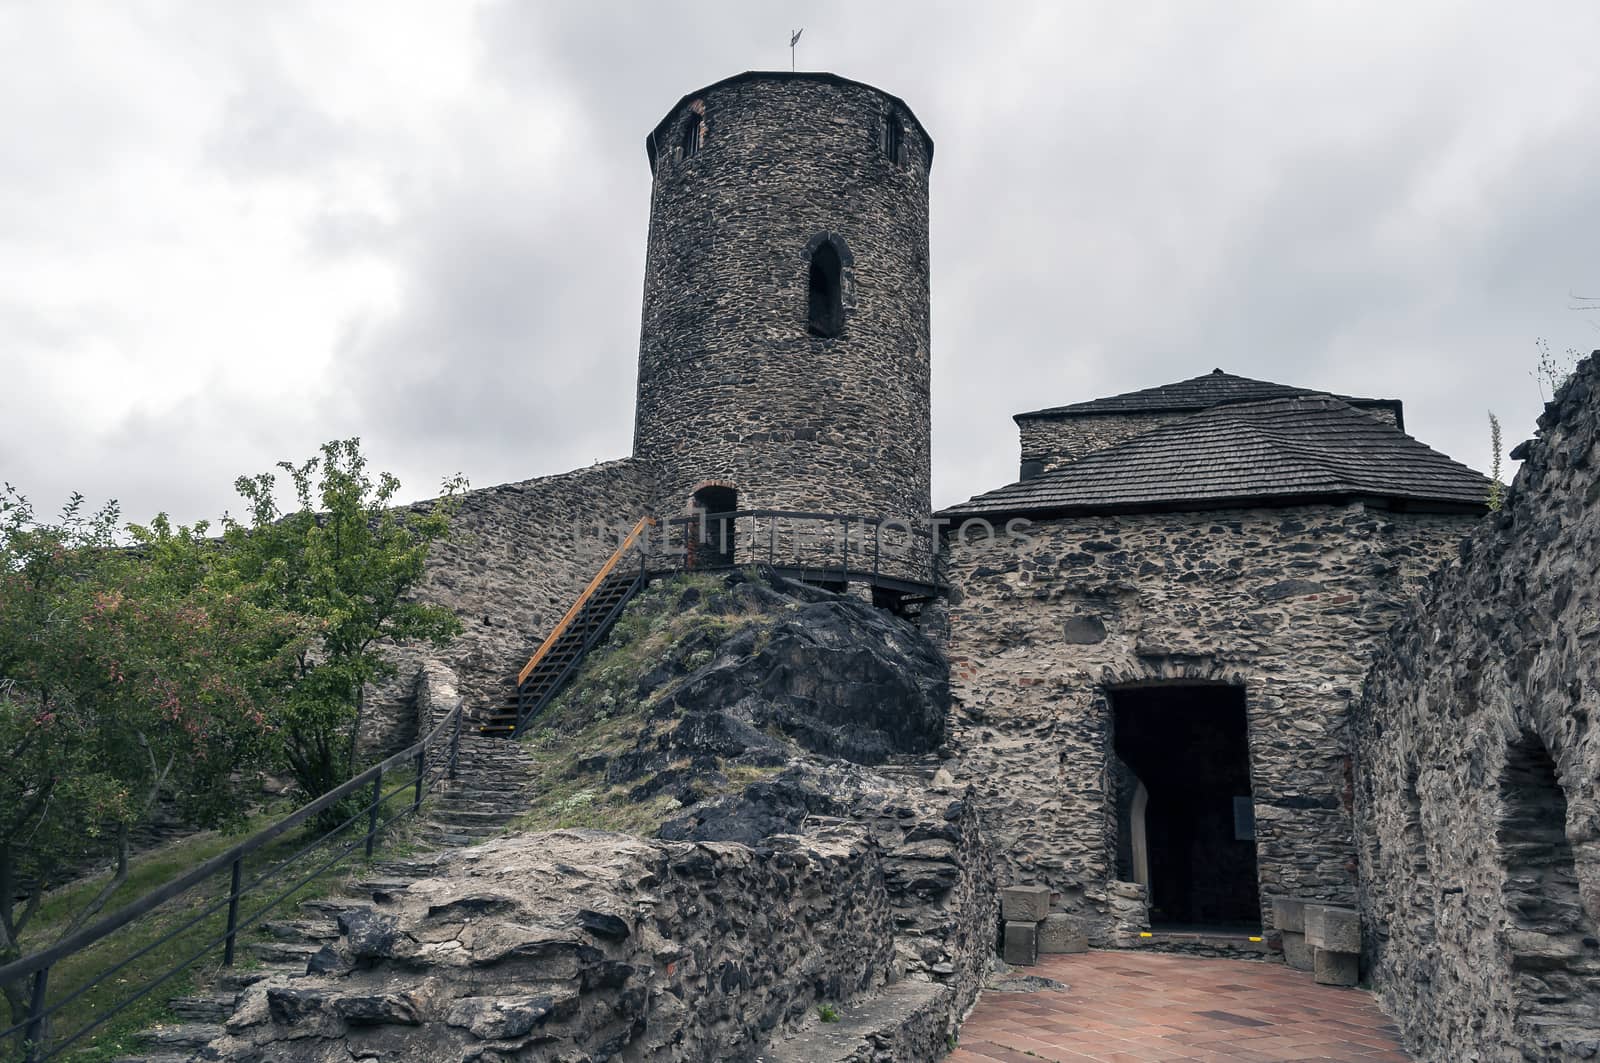 Medieval Strekov Castle in North Bohemia, Czech Republic.